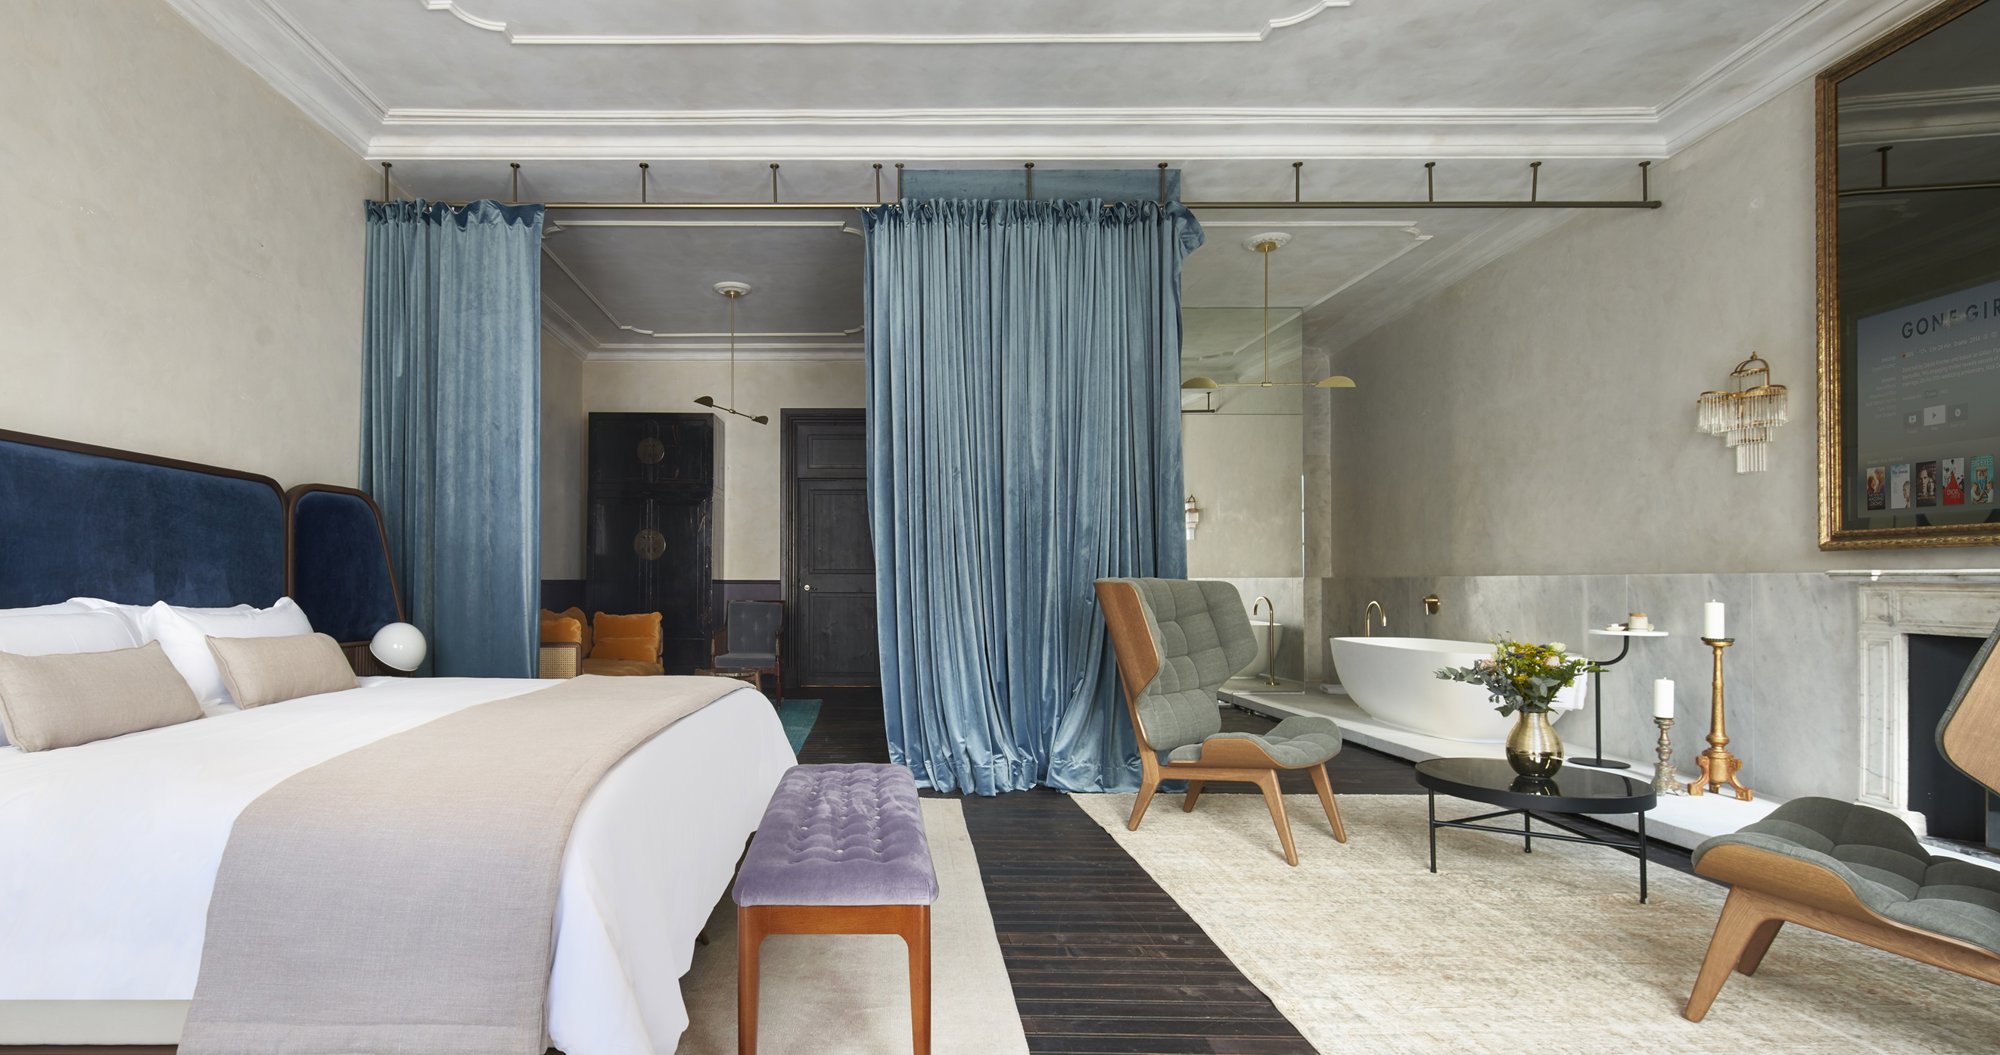 habitacion de hotel con cortinas azules y decoracion clasica